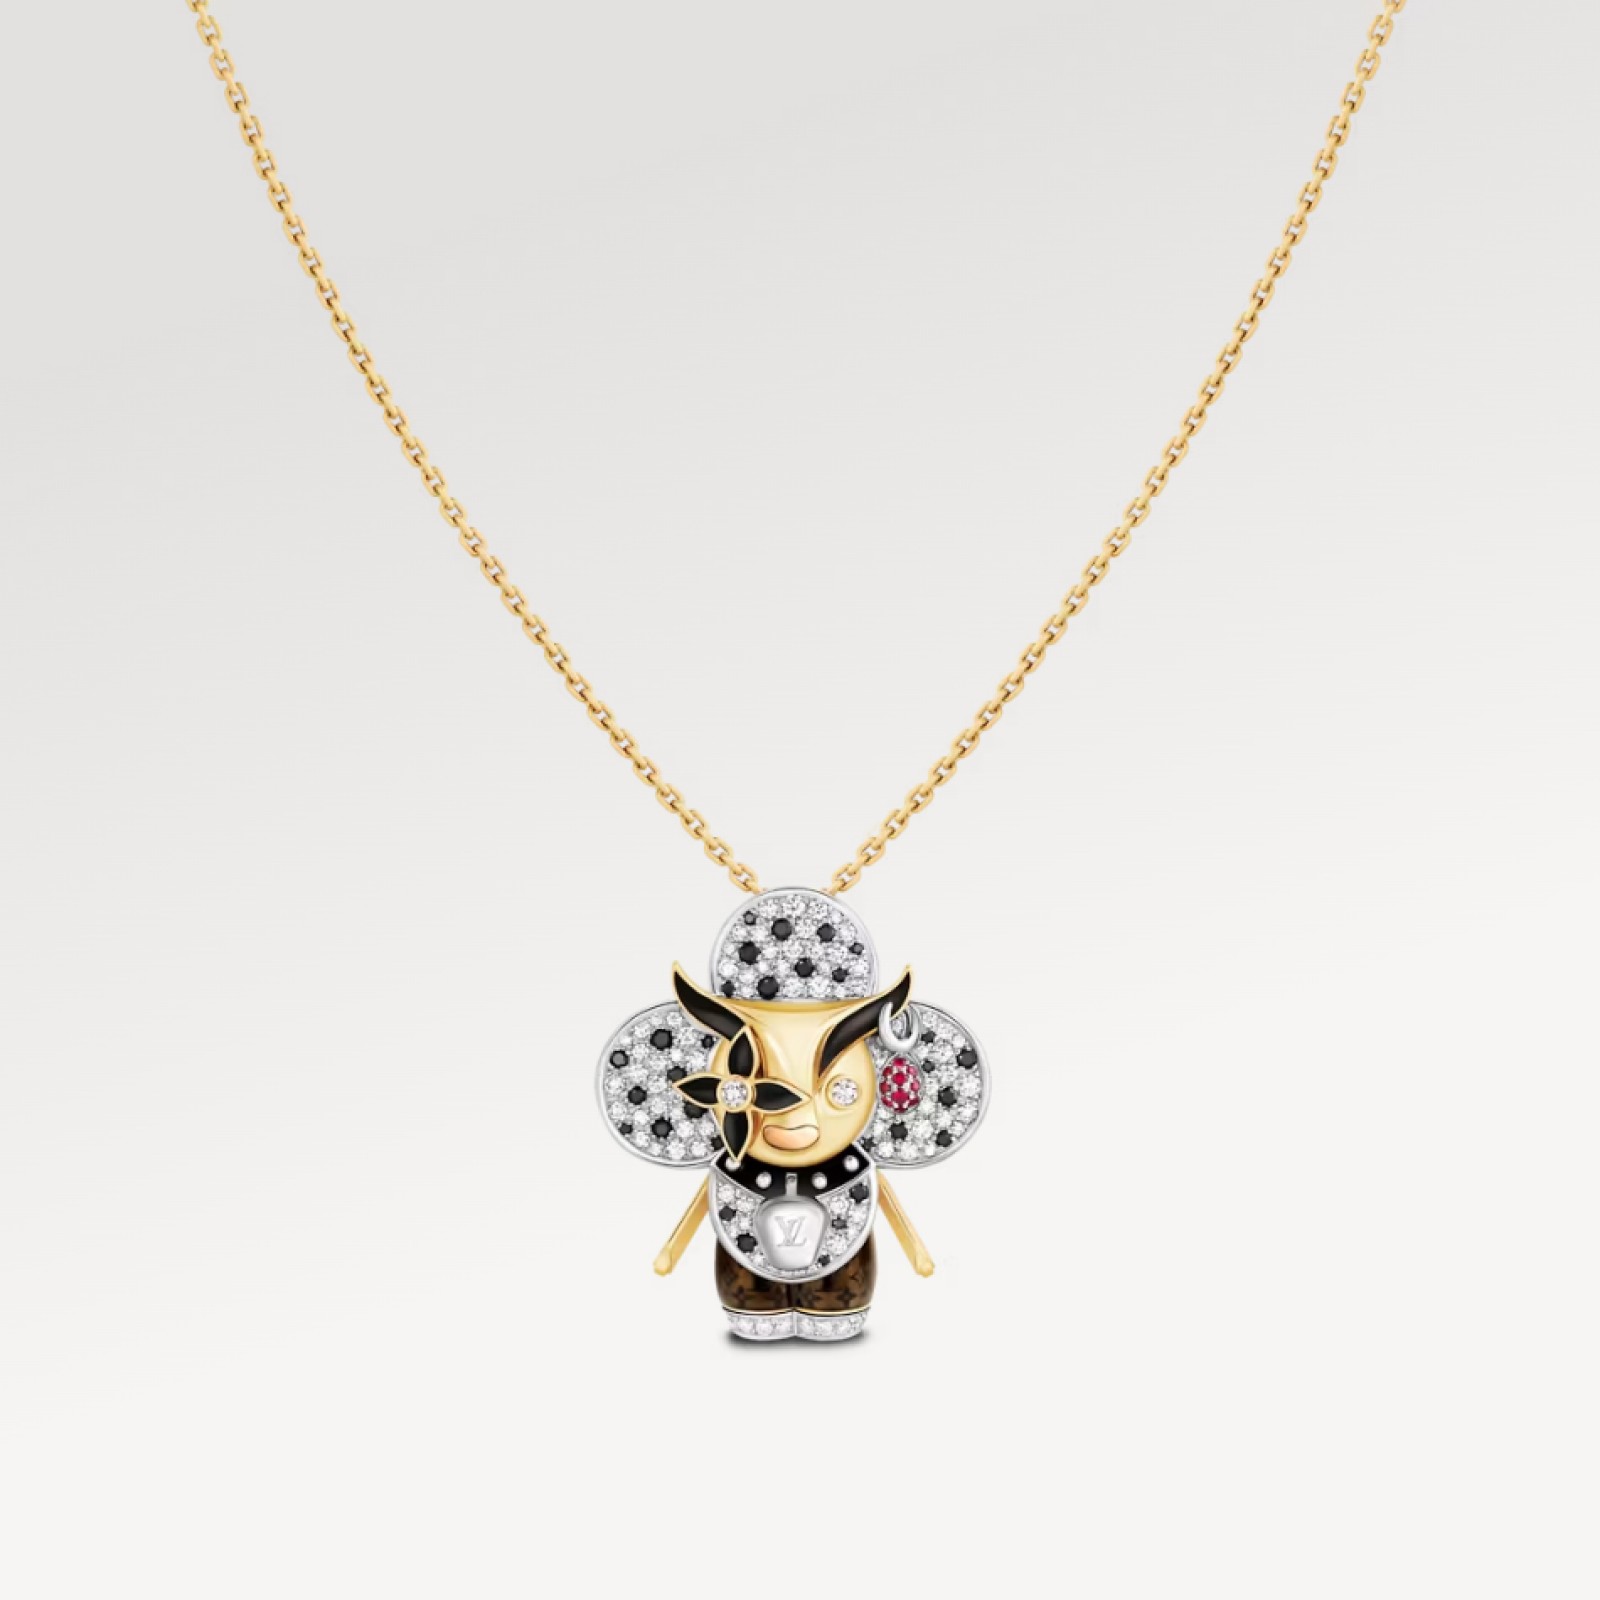 Vivienne Ox Pendant, 3 Golds, Lacquer, Diamonds & Colored Gemstones